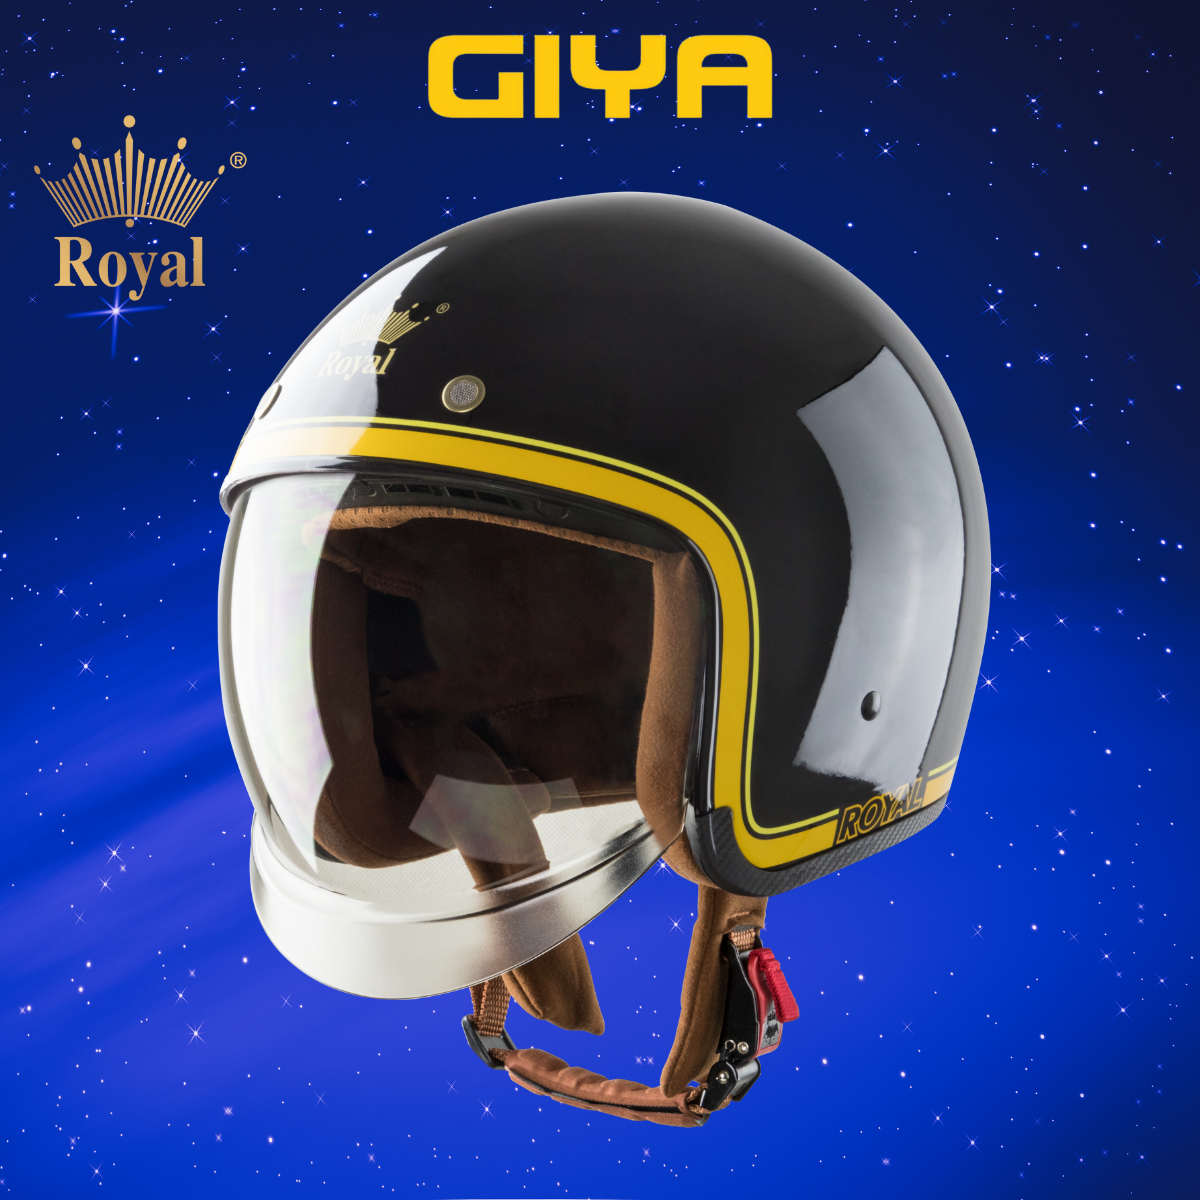 Nón bảo hiểm 3/4 Royal M139 kính âm V10 đen bóng phối viền vàng cá tính, mũ bảo hiểm có kính che hết mặt, cho nam và nữ, bảo hành 12 tháng - Giya Helmet